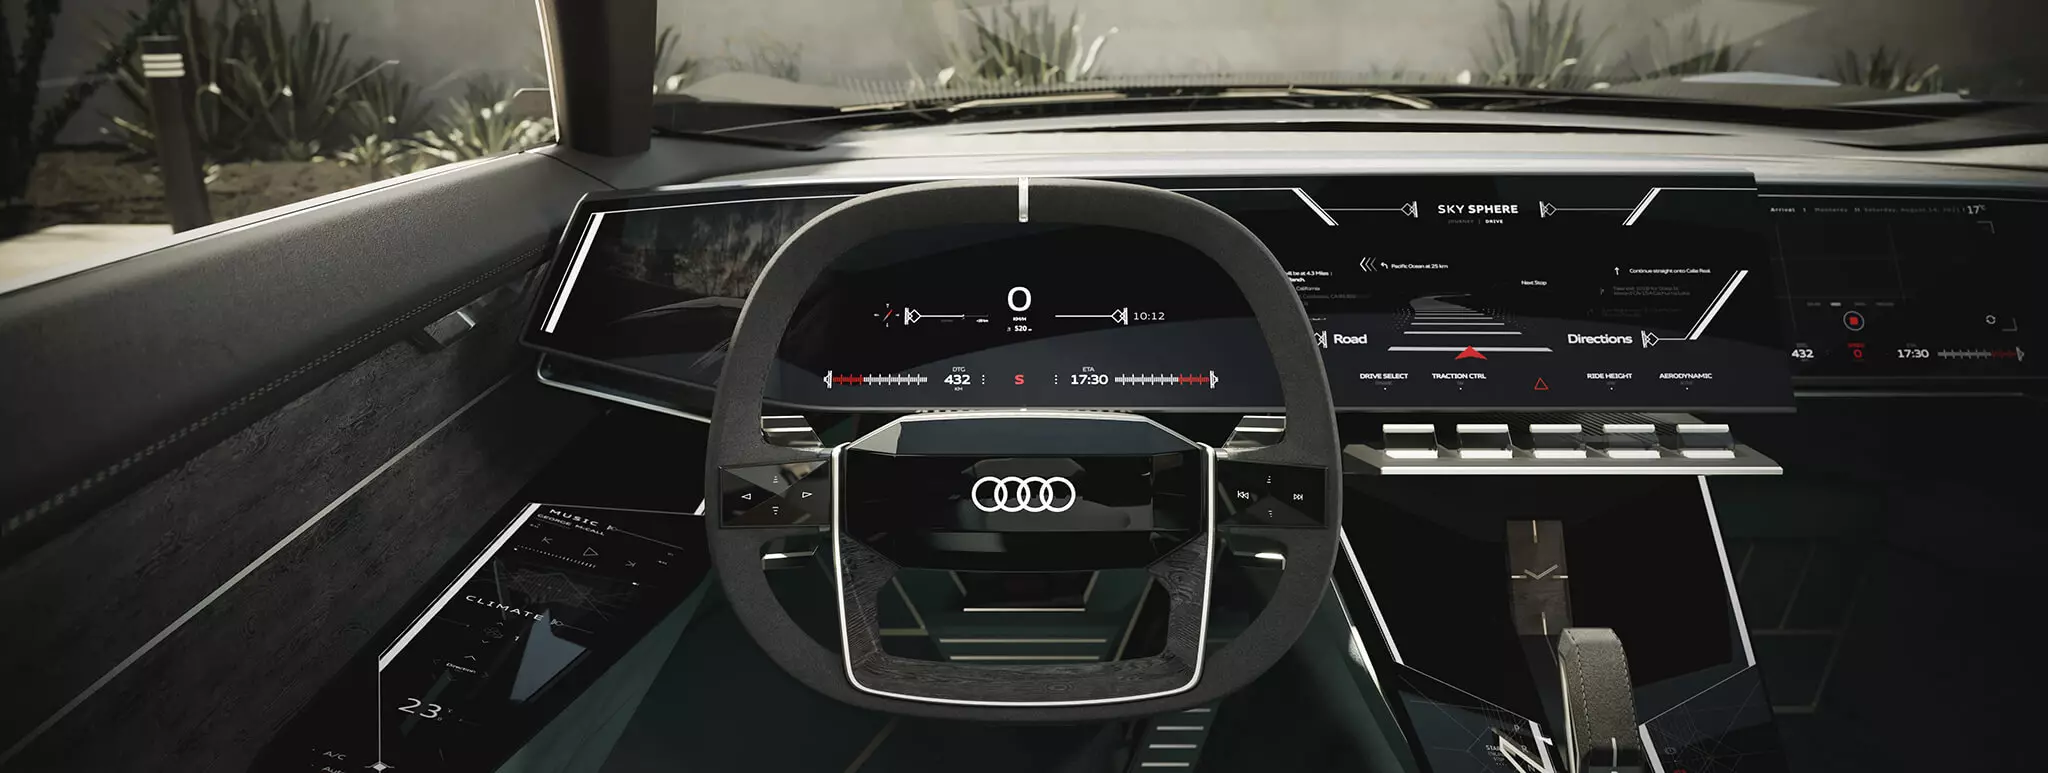 Audi skysphere концепції